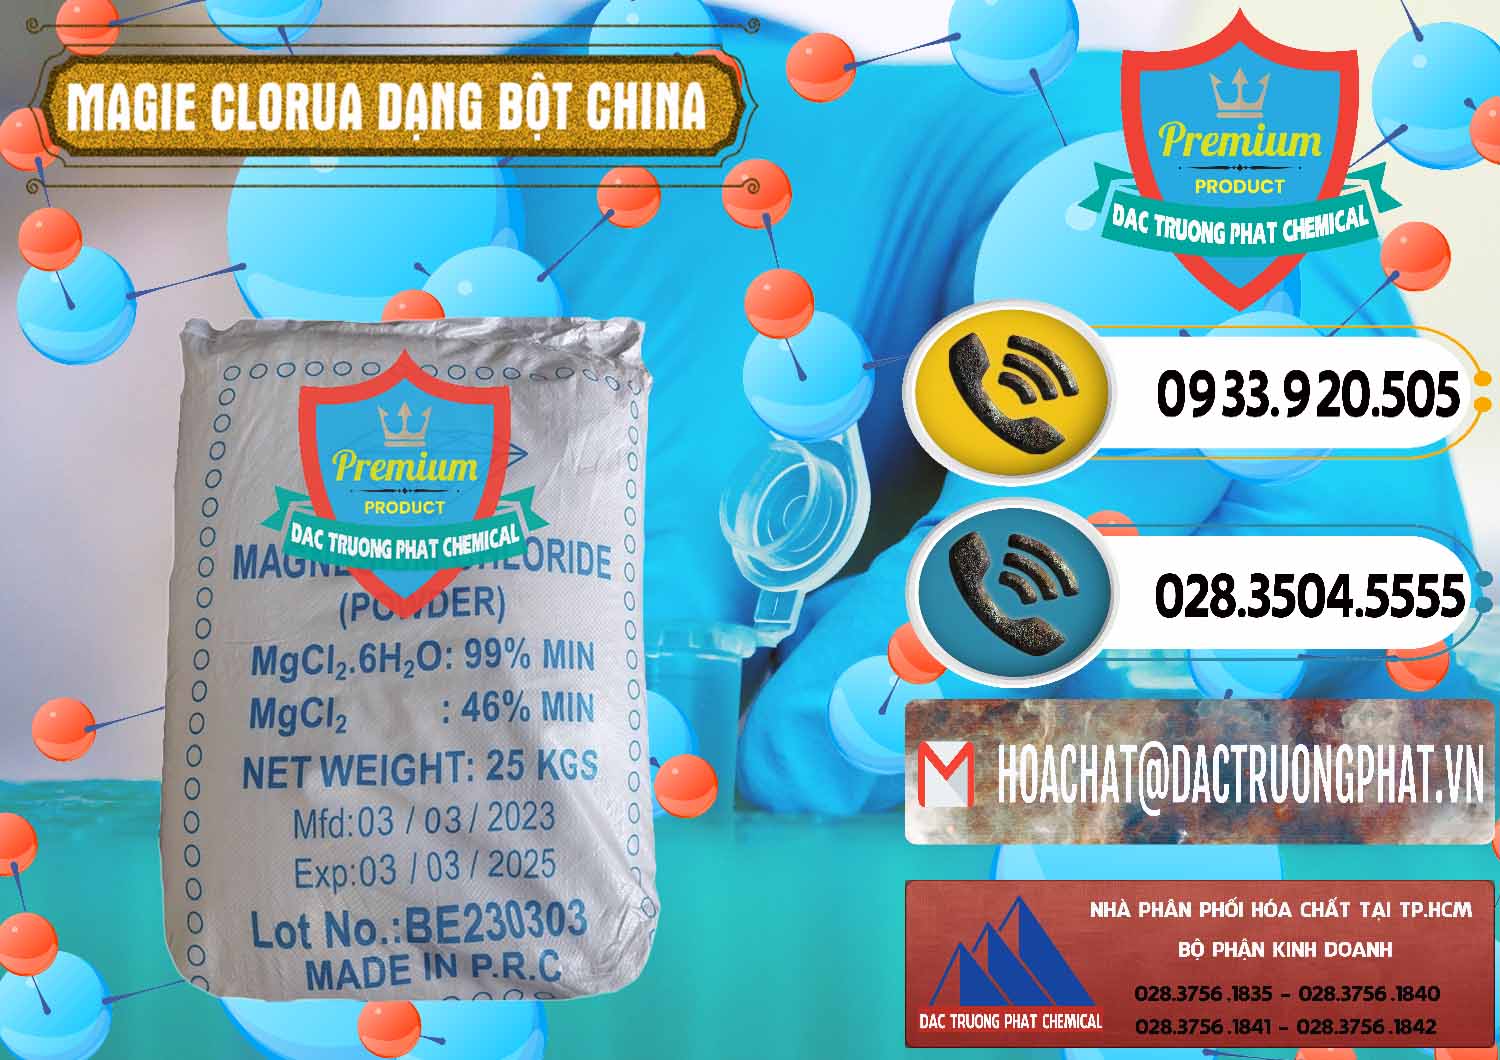 Nơi chuyên kinh doanh & bán Magie Clorua – MGCL2 96% Dạng Bột Logo Kim Cương Trung Quốc China - 0387 - Cty kinh doanh ( phân phối ) hóa chất tại TP.HCM - hoachatdetnhuom.vn